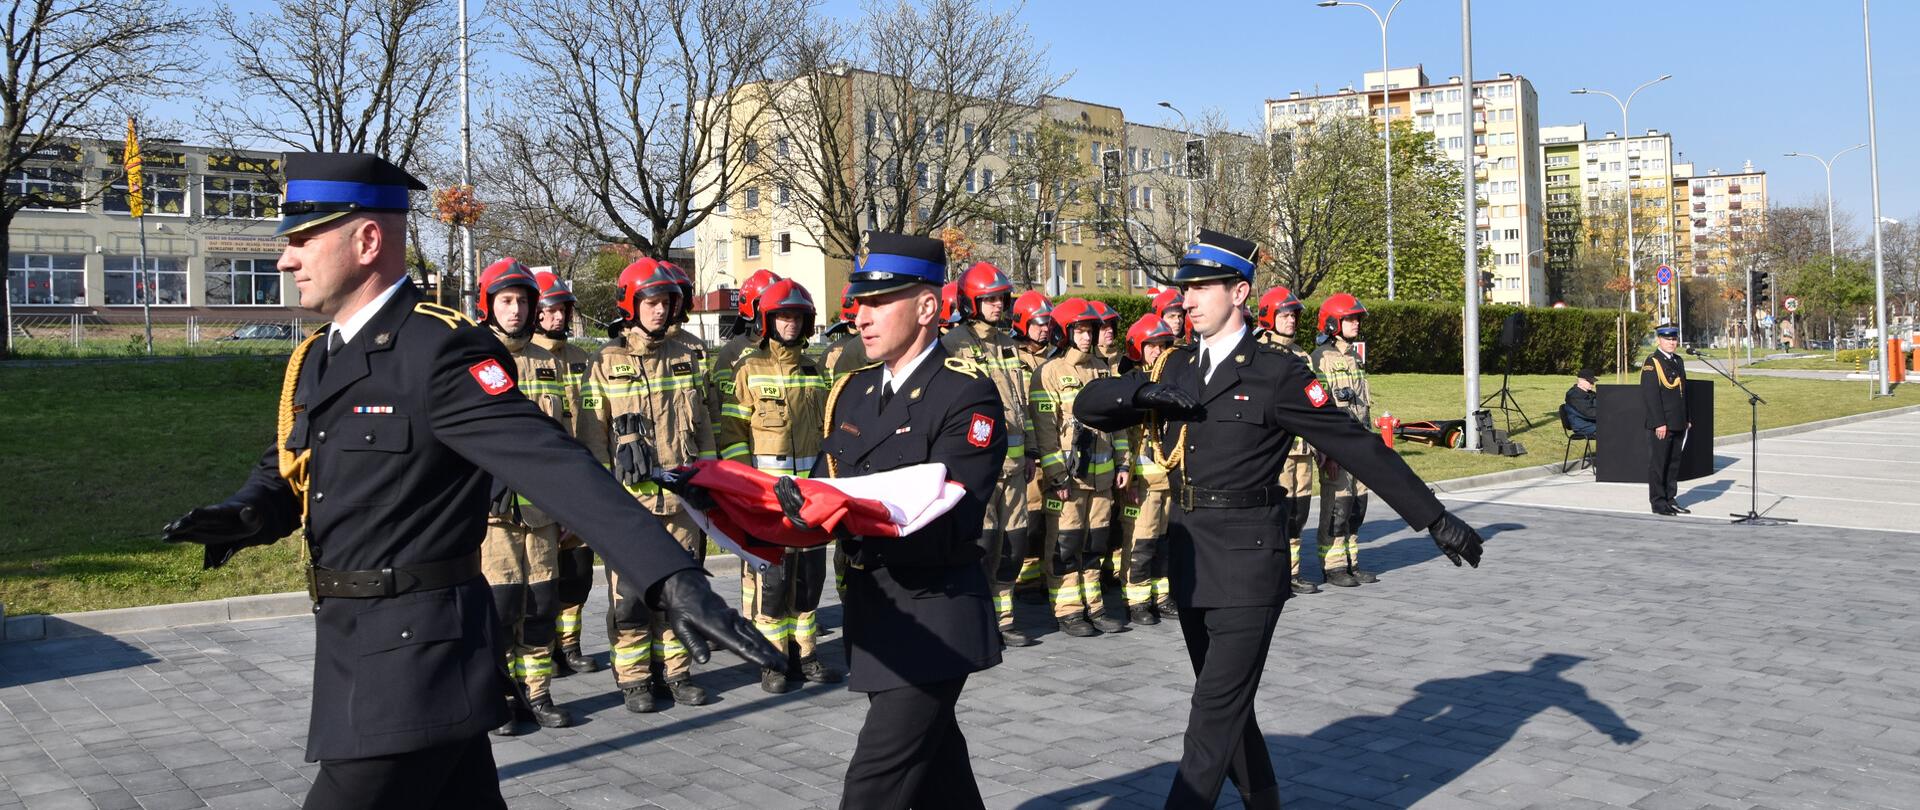 Fotografia przedstawia strażaków Jednostki Ratowniczo-Gaśniczej nr 1 w Kielcach podczas uroczystego podnoszenia biało-czerwonej flagi na maszt .
